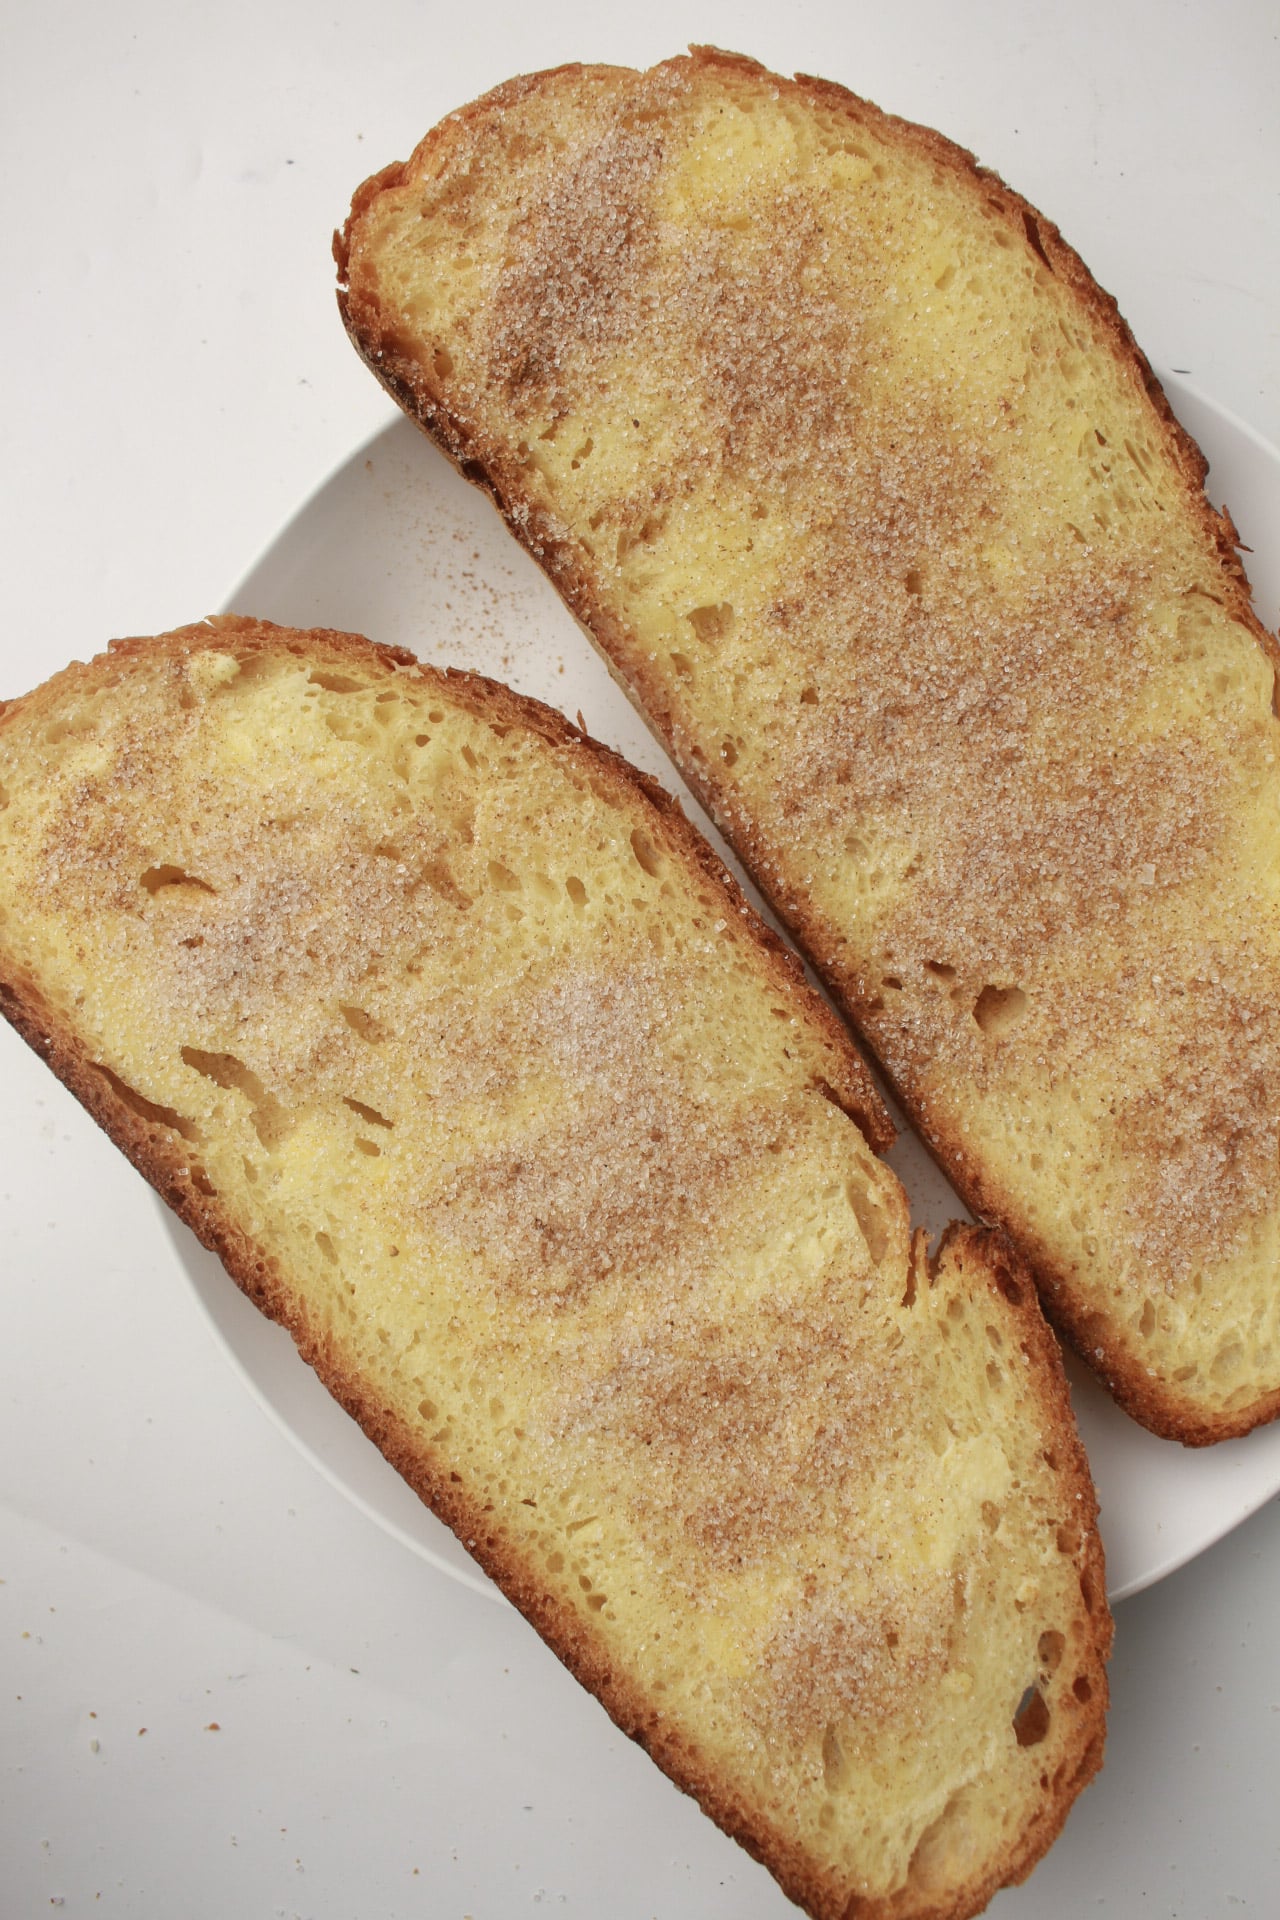 Cinnamon toast on a plate